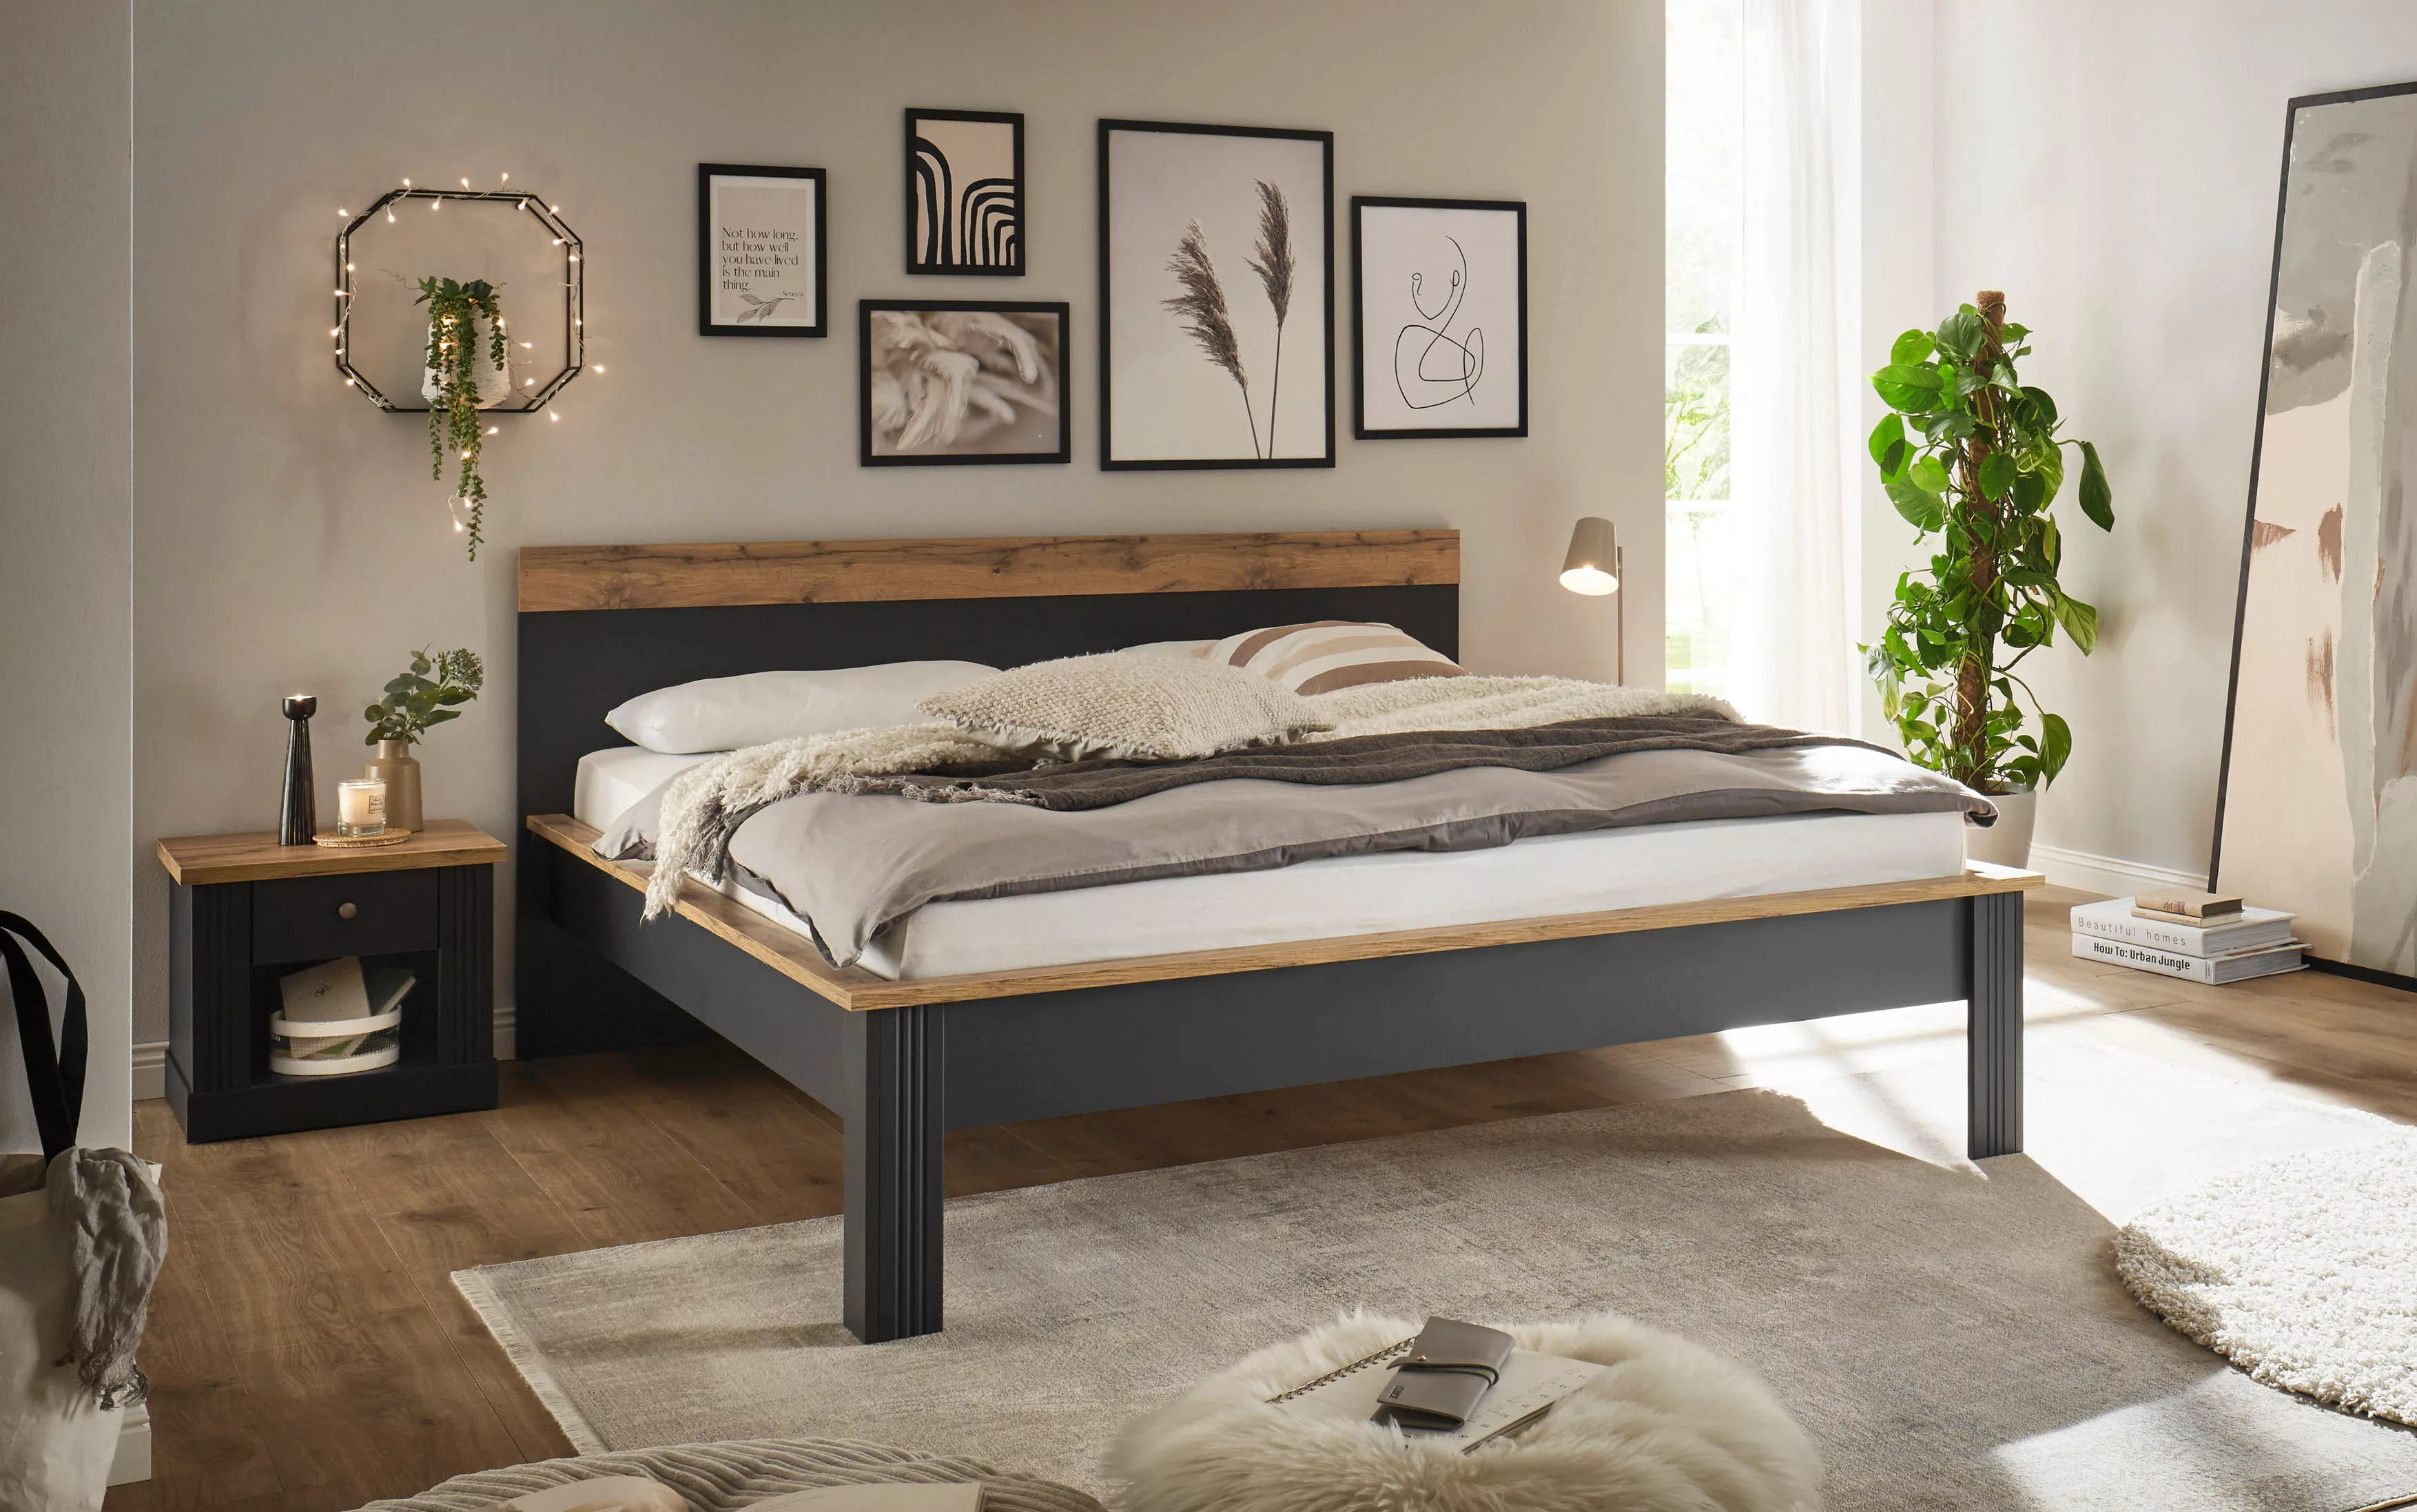 Home affaire Schlafzimmer-Set "Westminster", Bett Liegefläche 180/200cm und günstig online kaufen